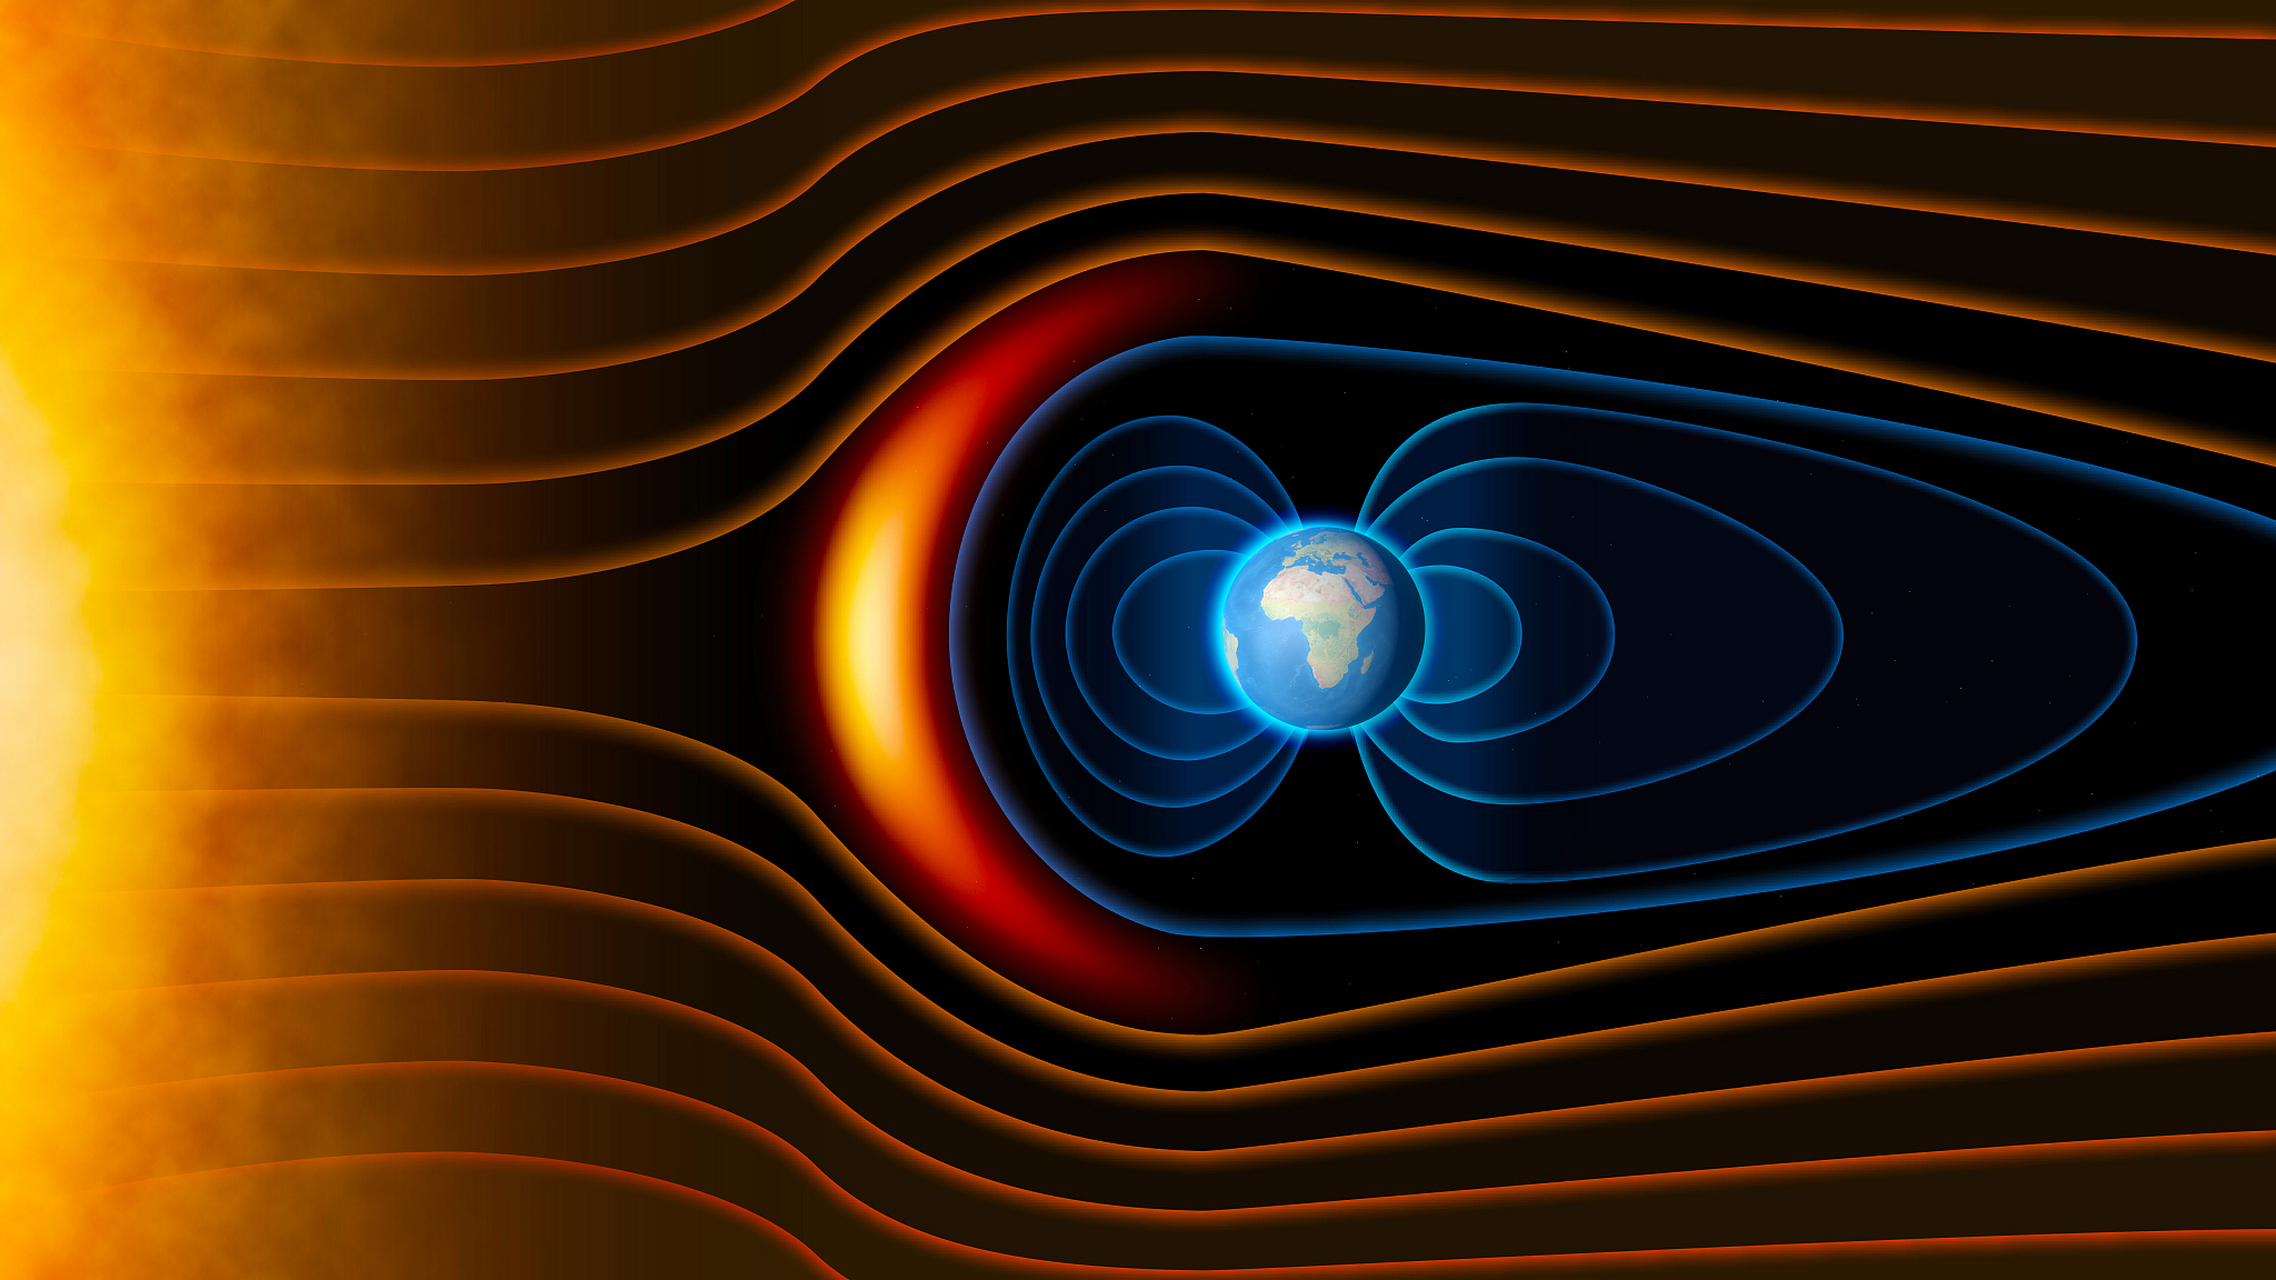 电磁波是由电场和磁场交替产生和传播的,它们在空间中以波的形式传播